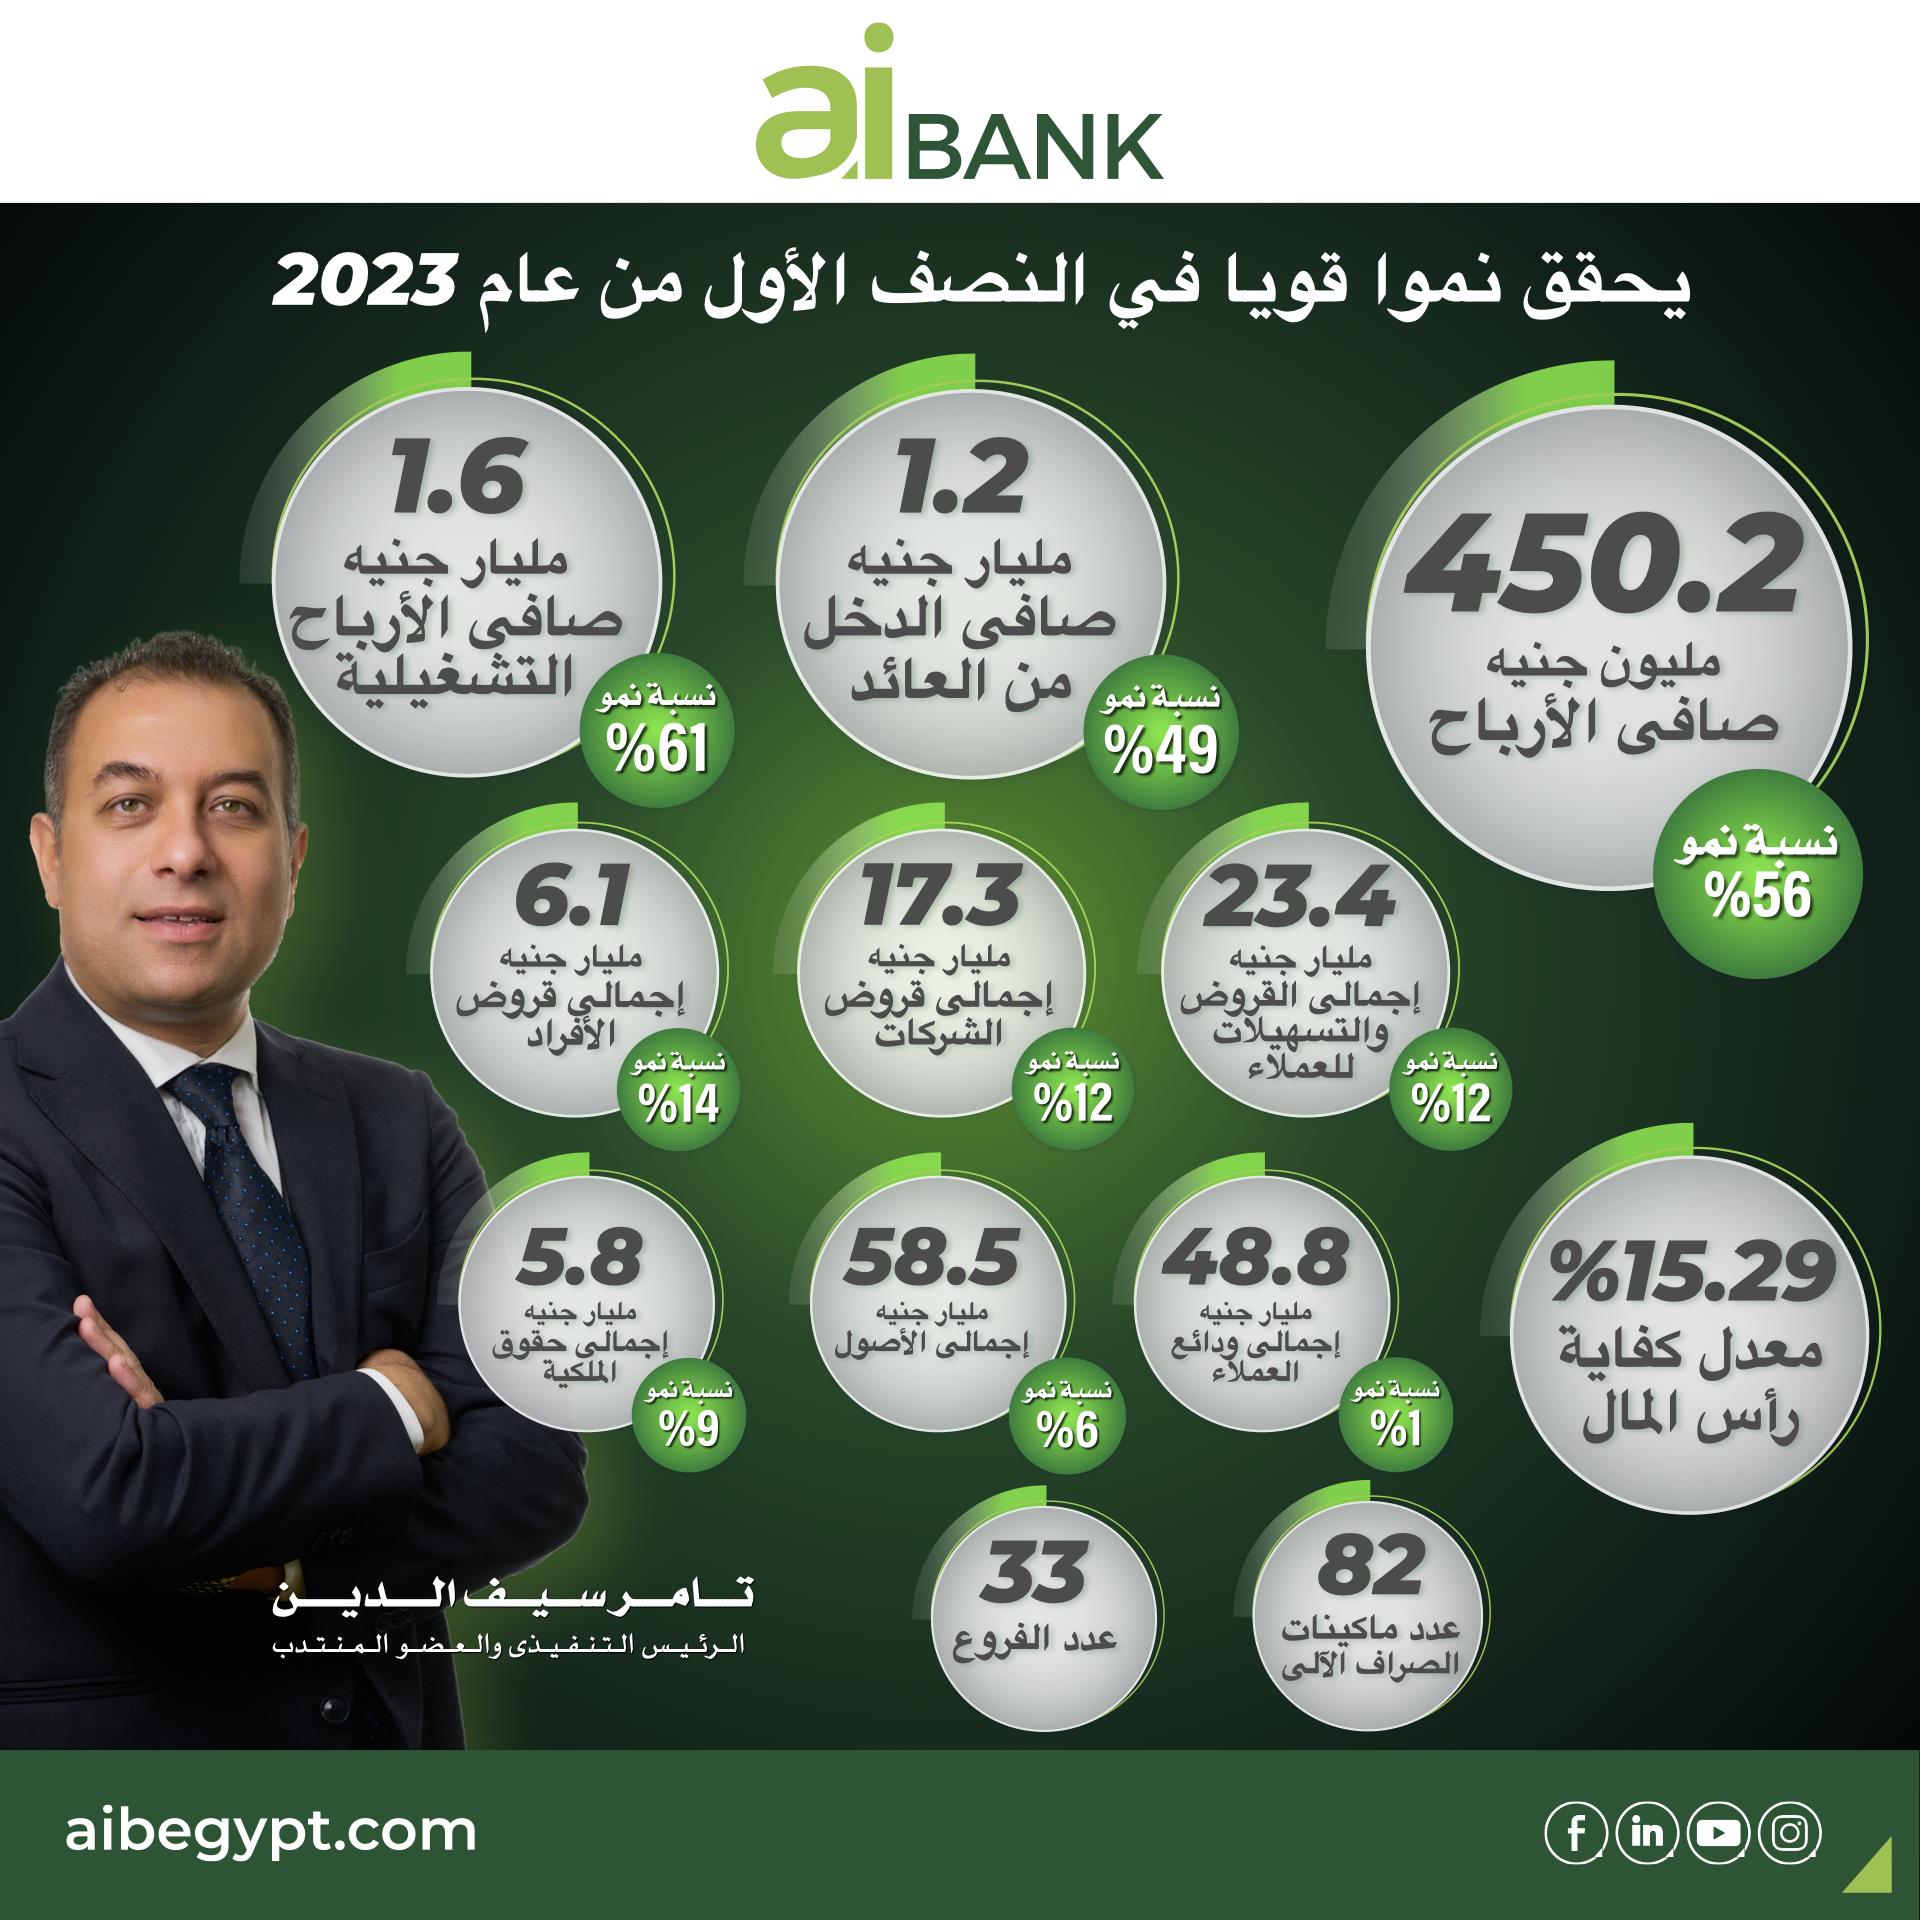 بمعدل نمو قوي ٤٥٠ مليون جنيه صافي أرباح aibank في النصف الأول من عام 2023